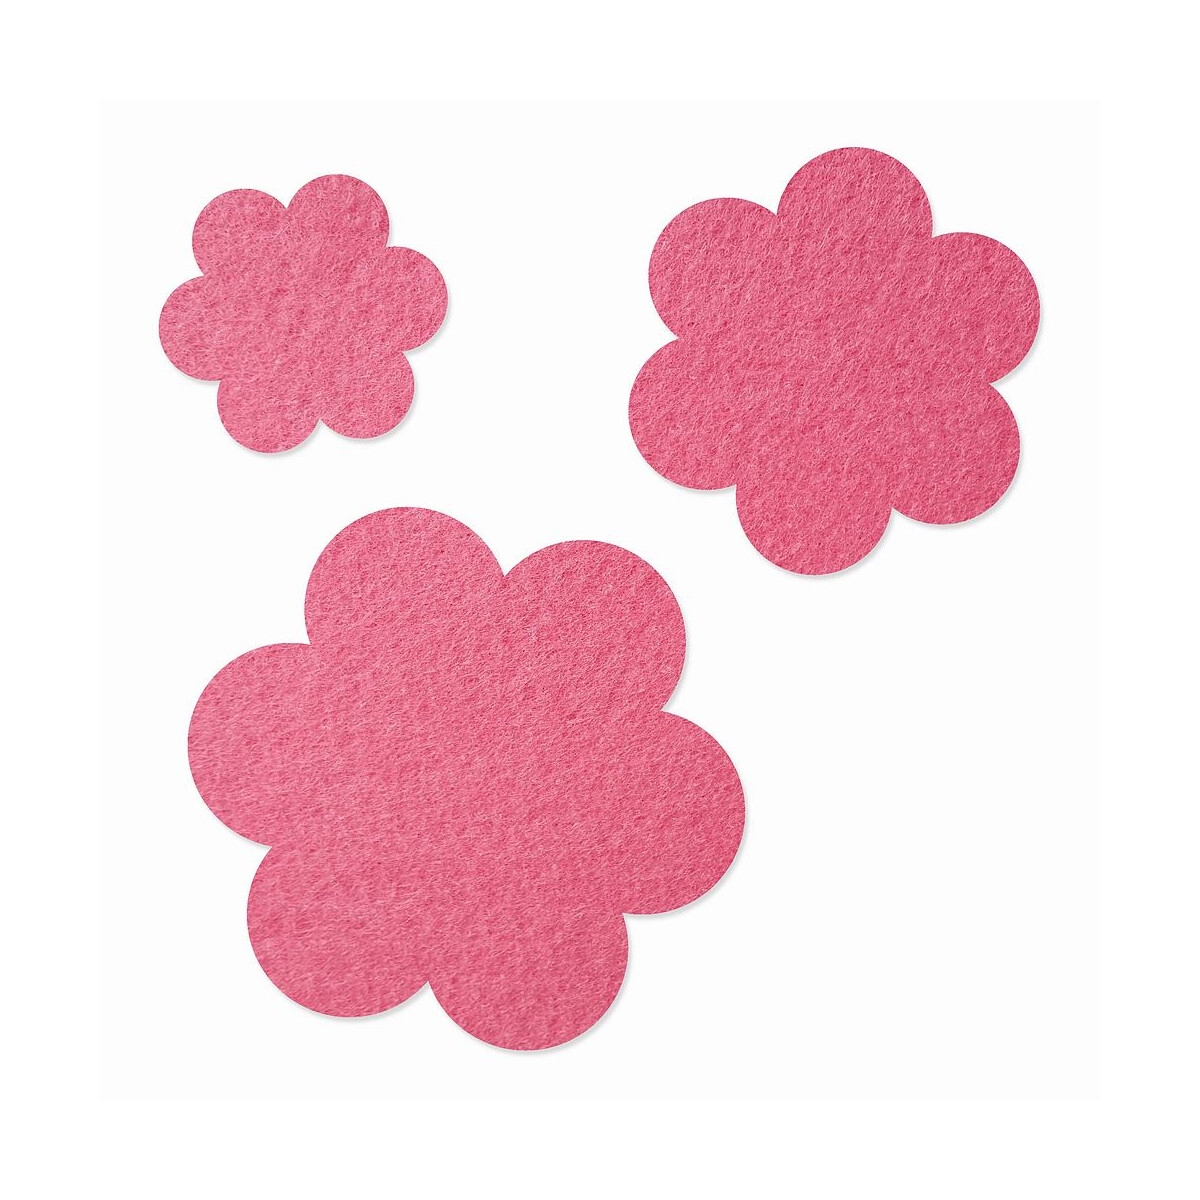 FILZ Blume 10er Set 4 cm - pink